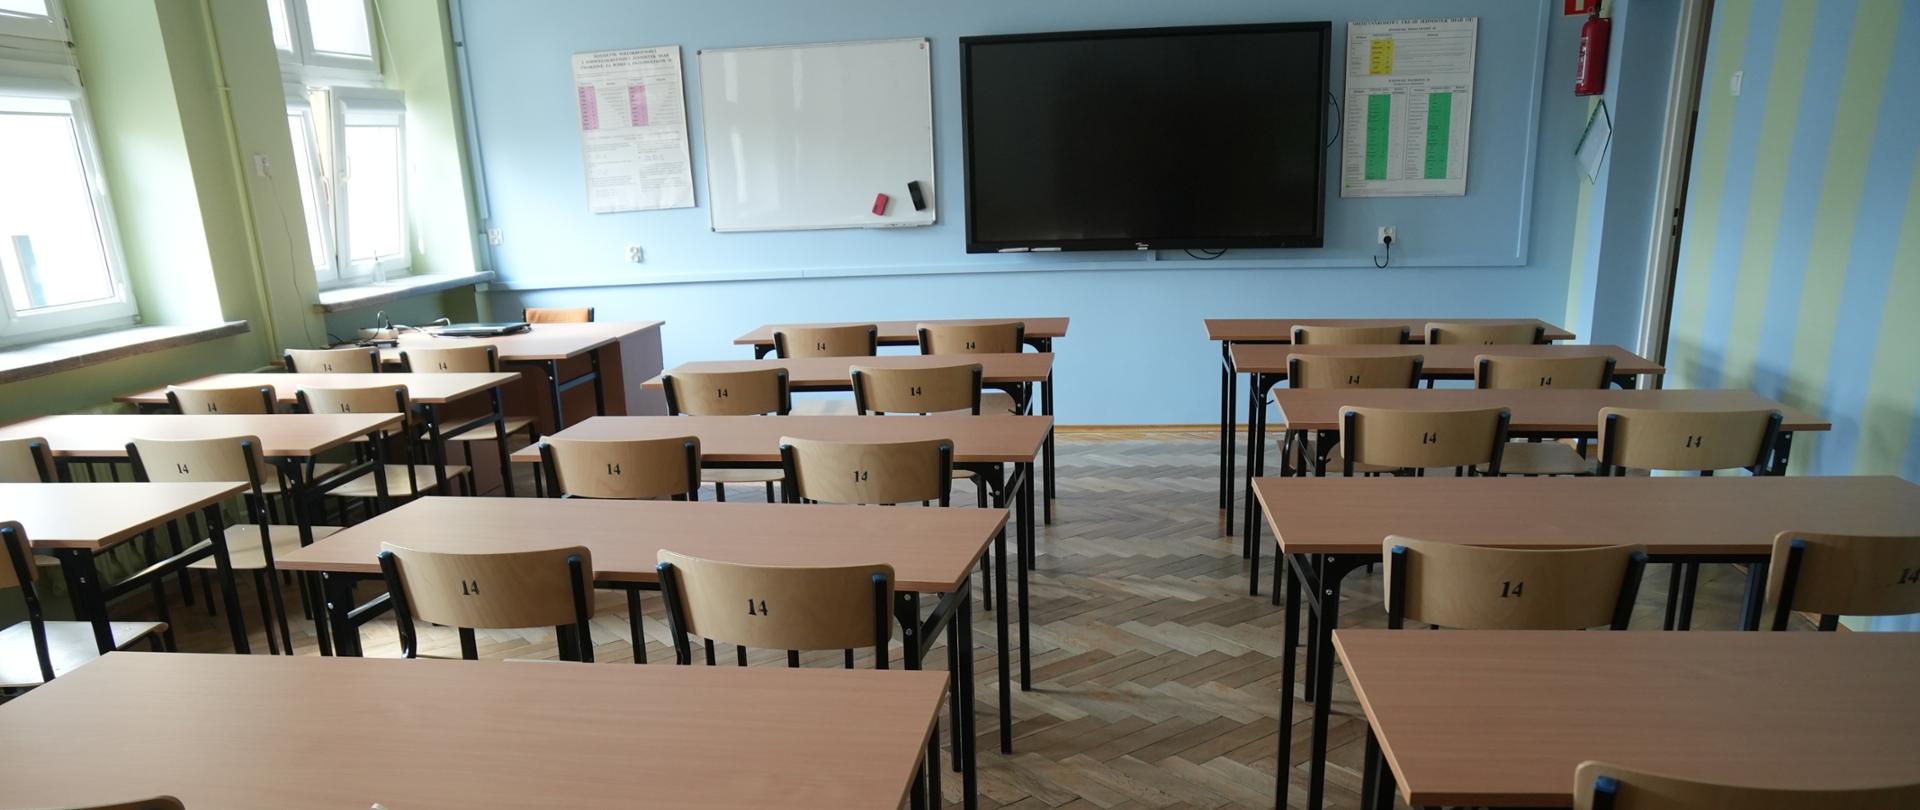 Nowe wyposażenie do trzech sal lekcyjnych I Liceum Ogólnokształcącego im. S. Konarskiego w Zambrowie